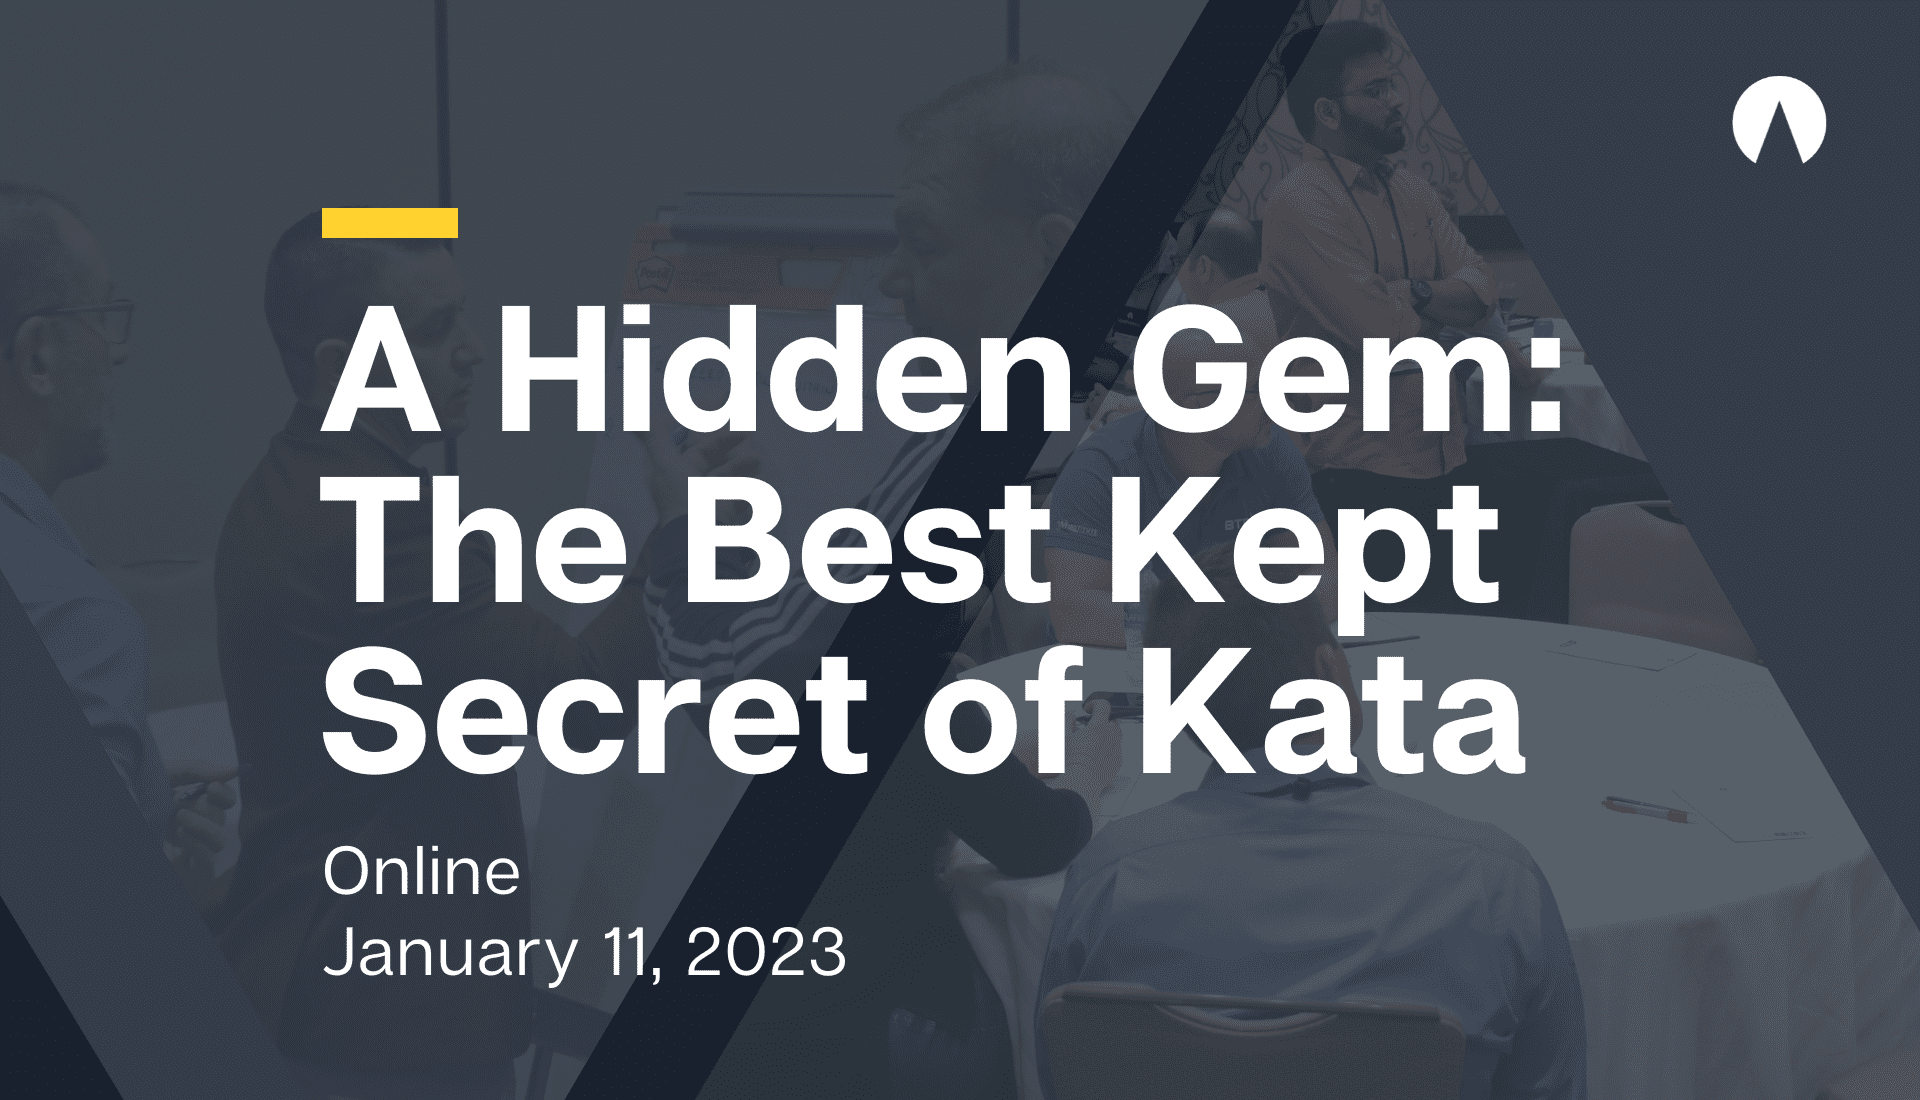 A Hidden Gem: The Best Kept Secret of Kata